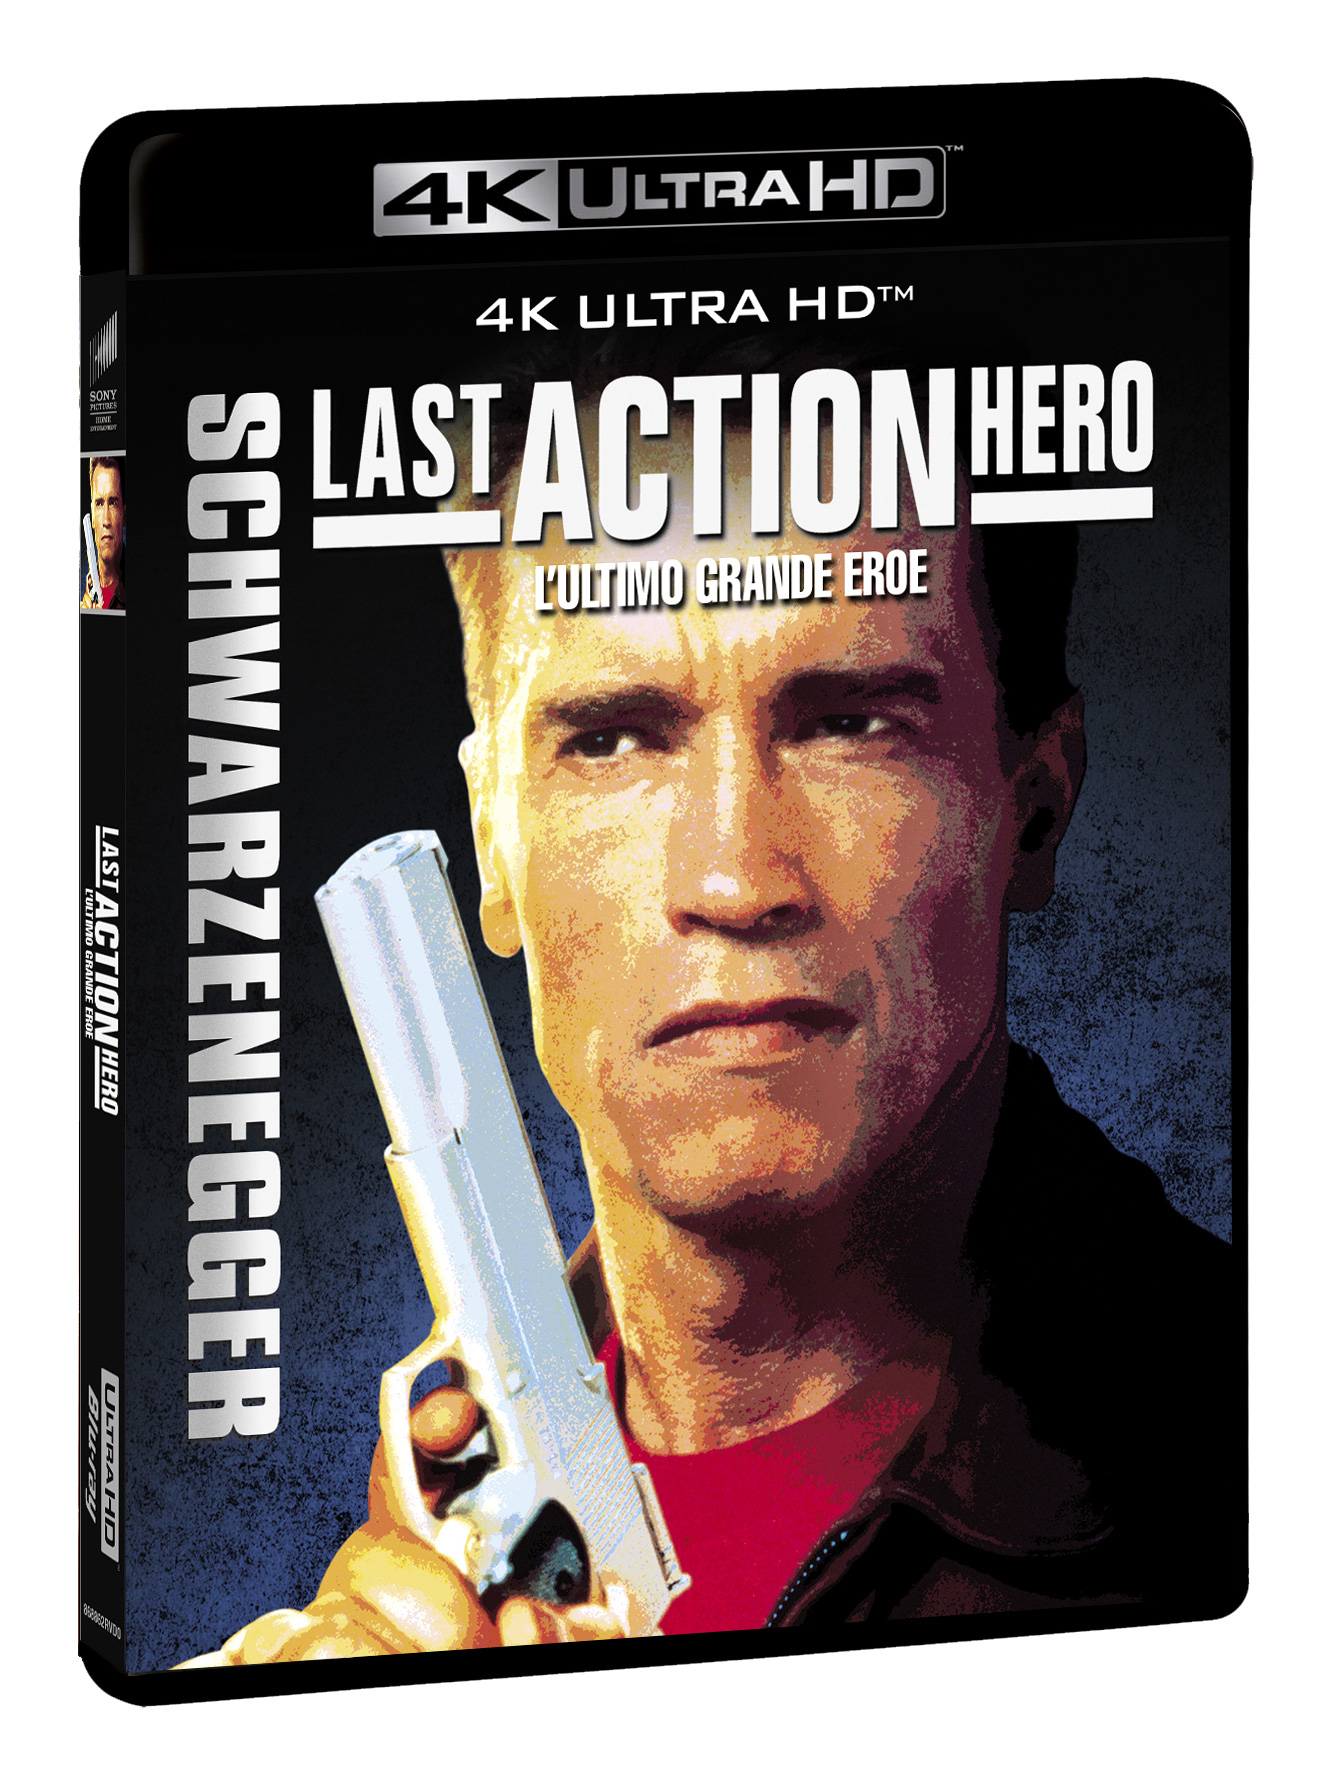 Last Action Hero - L'ultimo grande eroe in 4k